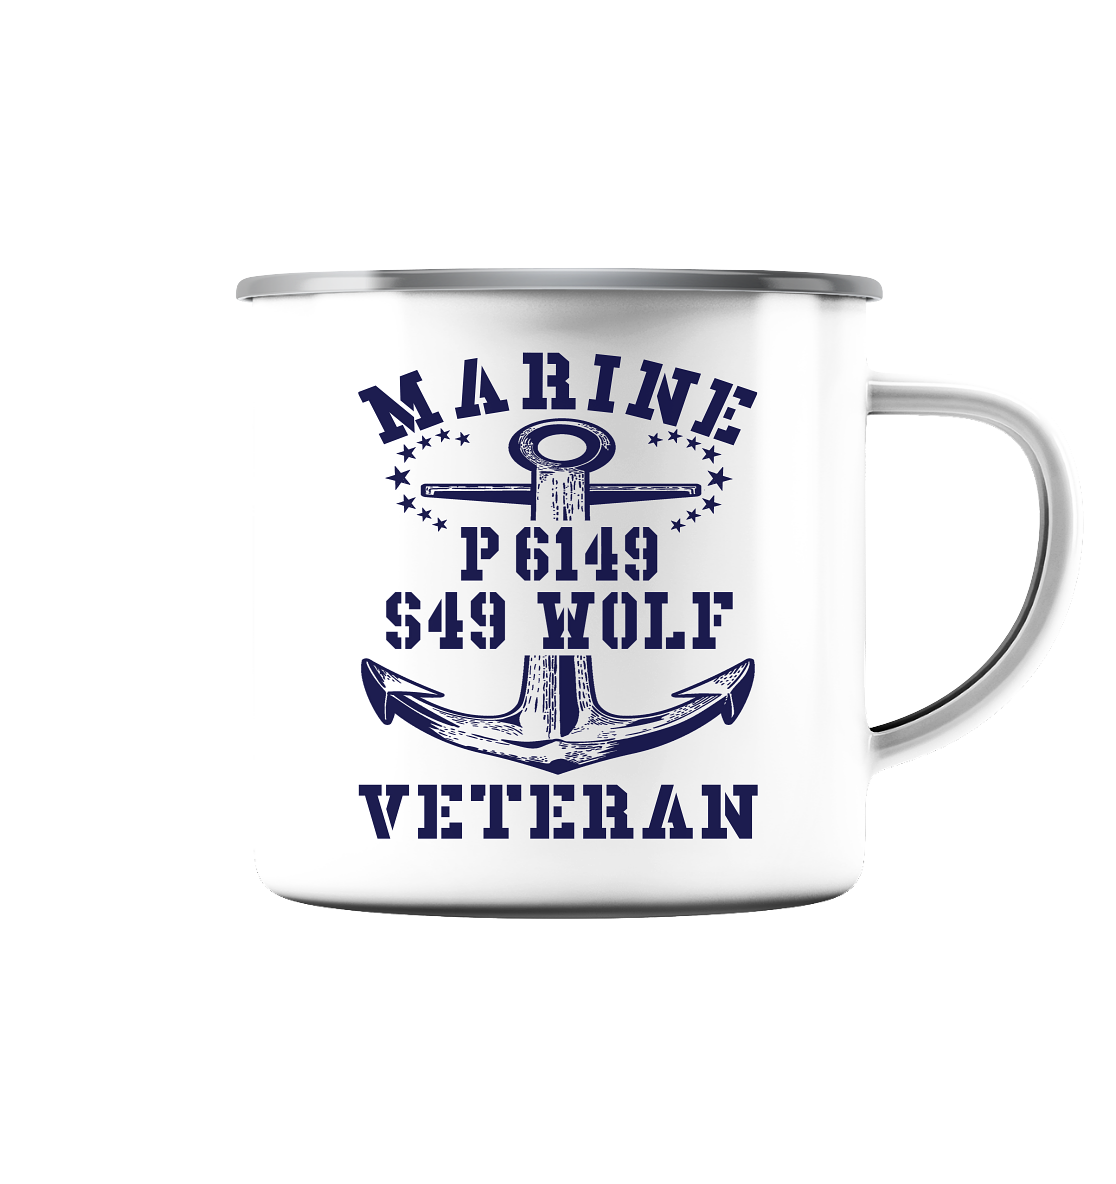 P6149 S49 WOLF Marine Veteran - Emaille Tasse (Silber)